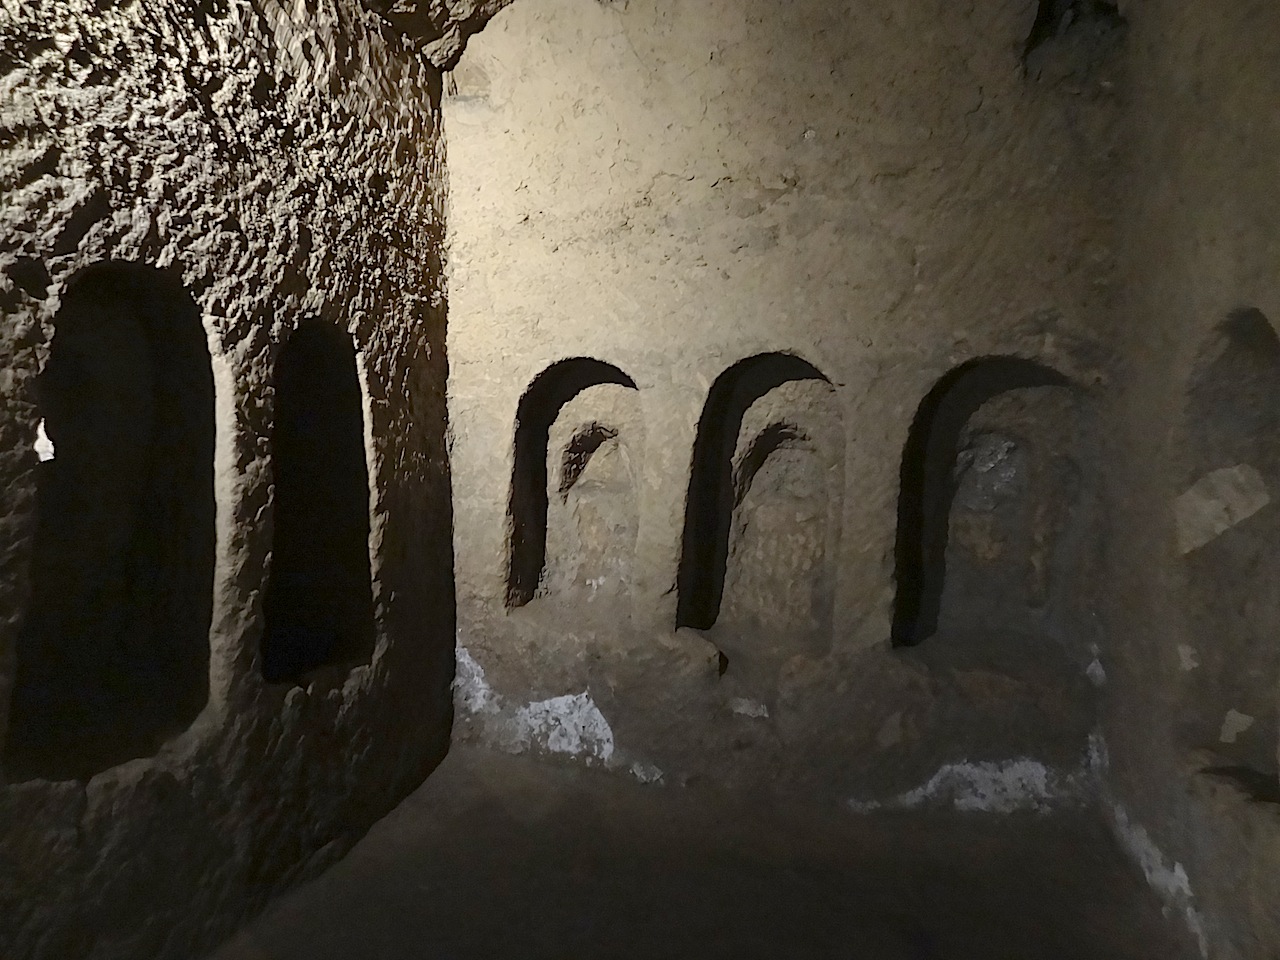 Naples catacombes San Gaudioso